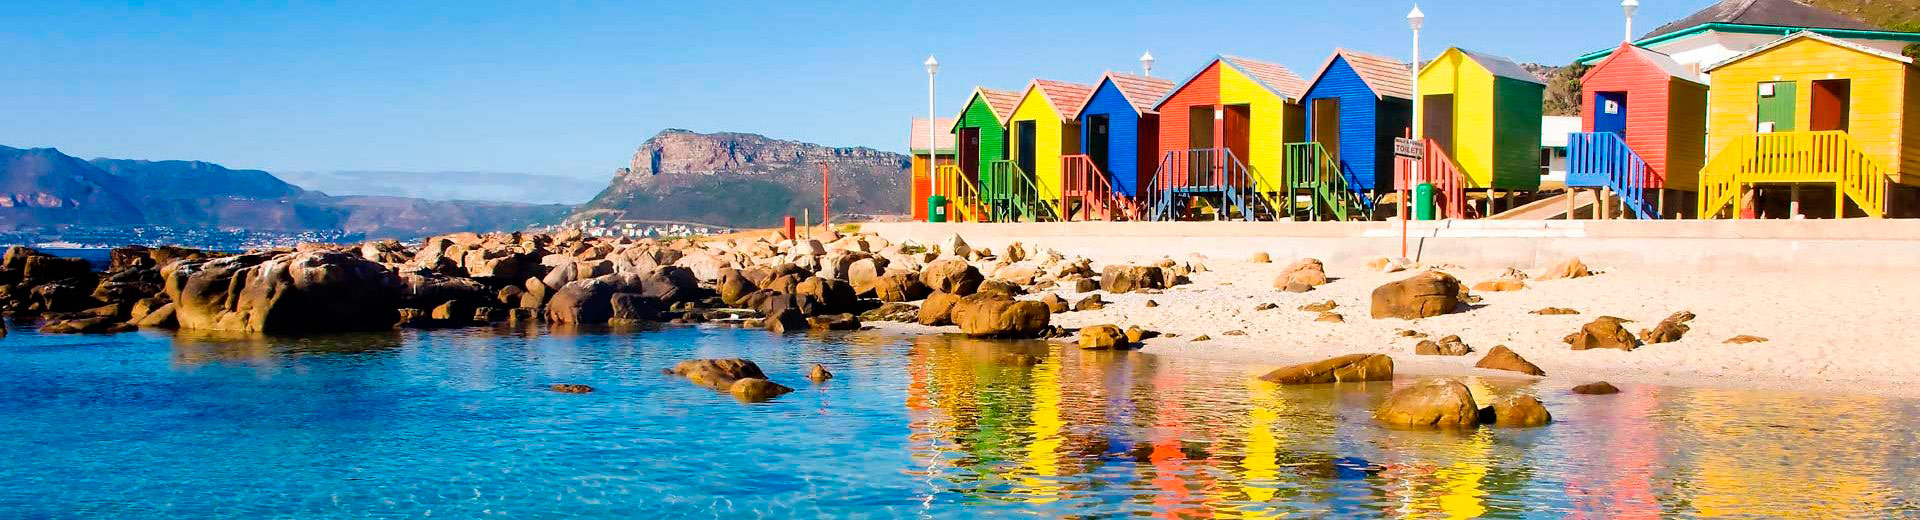 As praias de Cape Town oferecem um pacote maravilhoso de belezas naturais